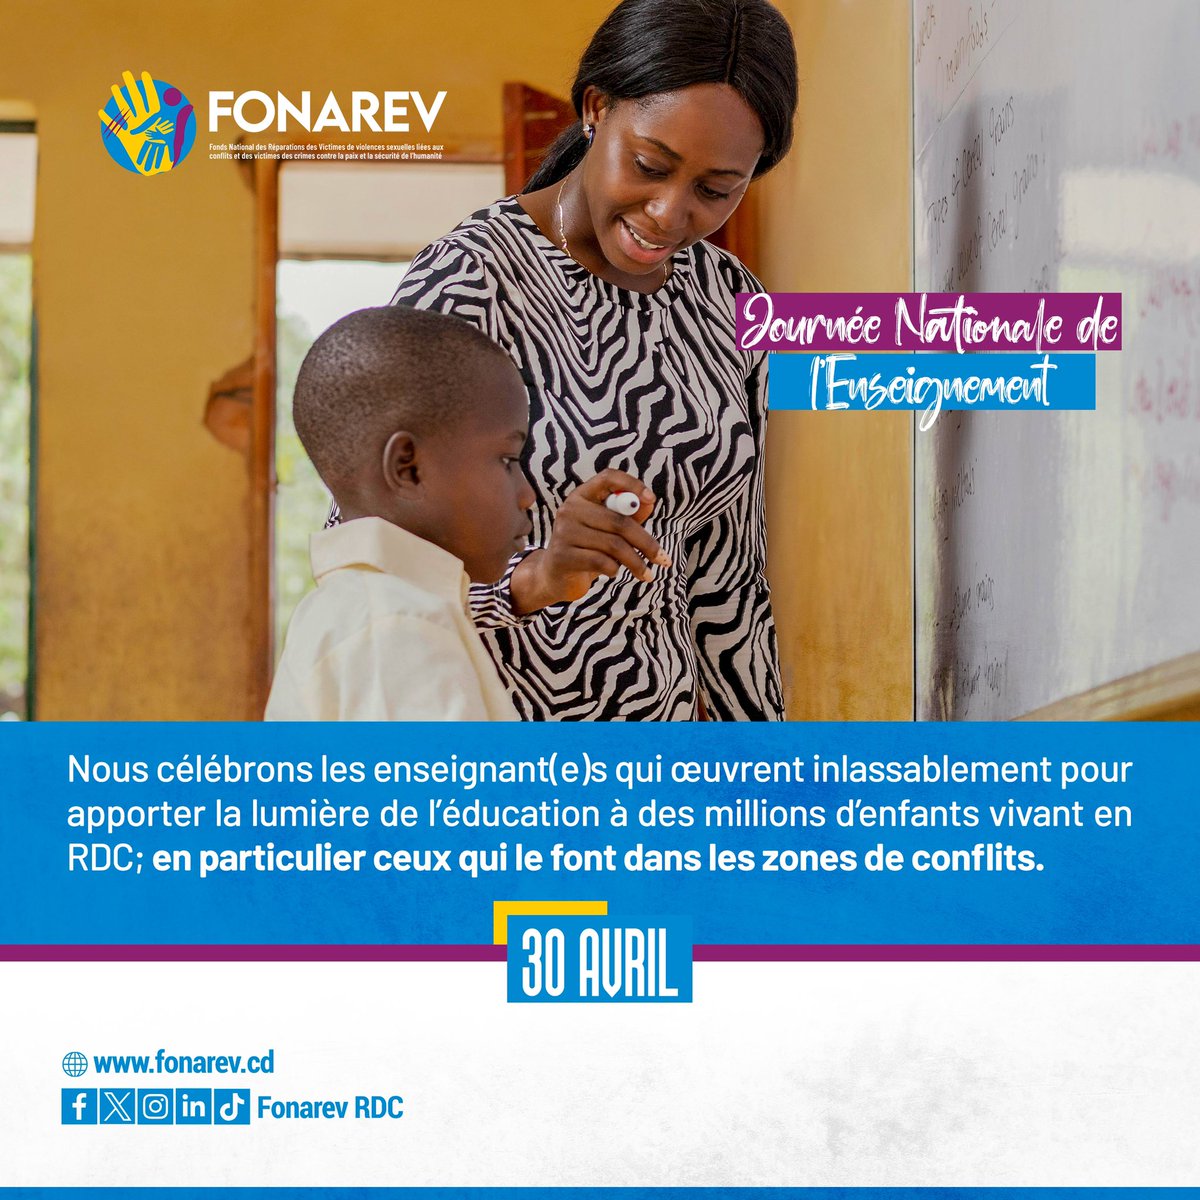 En cette Journée Nationale de l’enseignement, le FONAREV rend hommage à toutes ces vaillantes femmes et tous ces vaillants hommes qui se dévouent corps et âme à l'enseignement à travers la République démocratique du Congo, en particulier tous ceux se trouvant en zones de